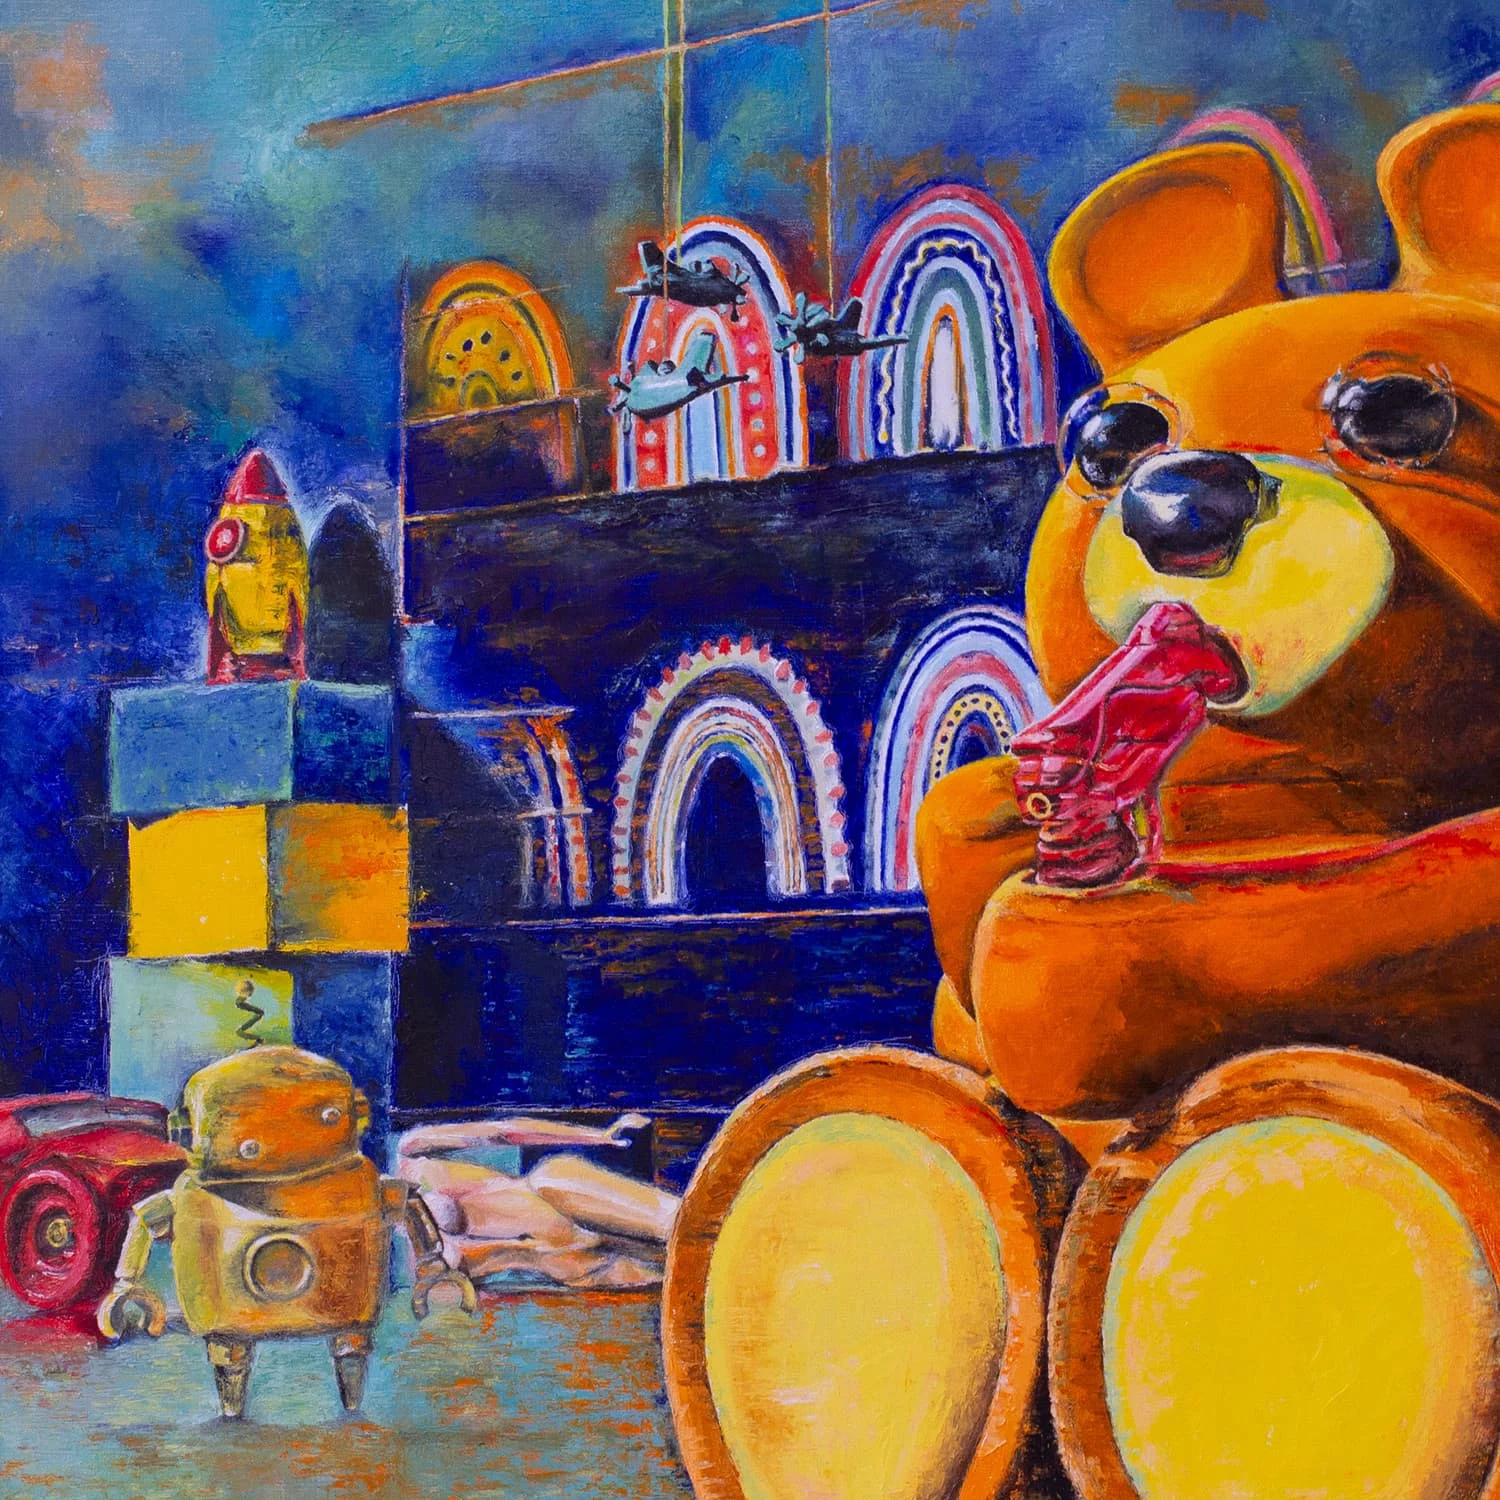 Oil on canvas. Teddy bear suicide 100cm x 100cm x 3.5cm